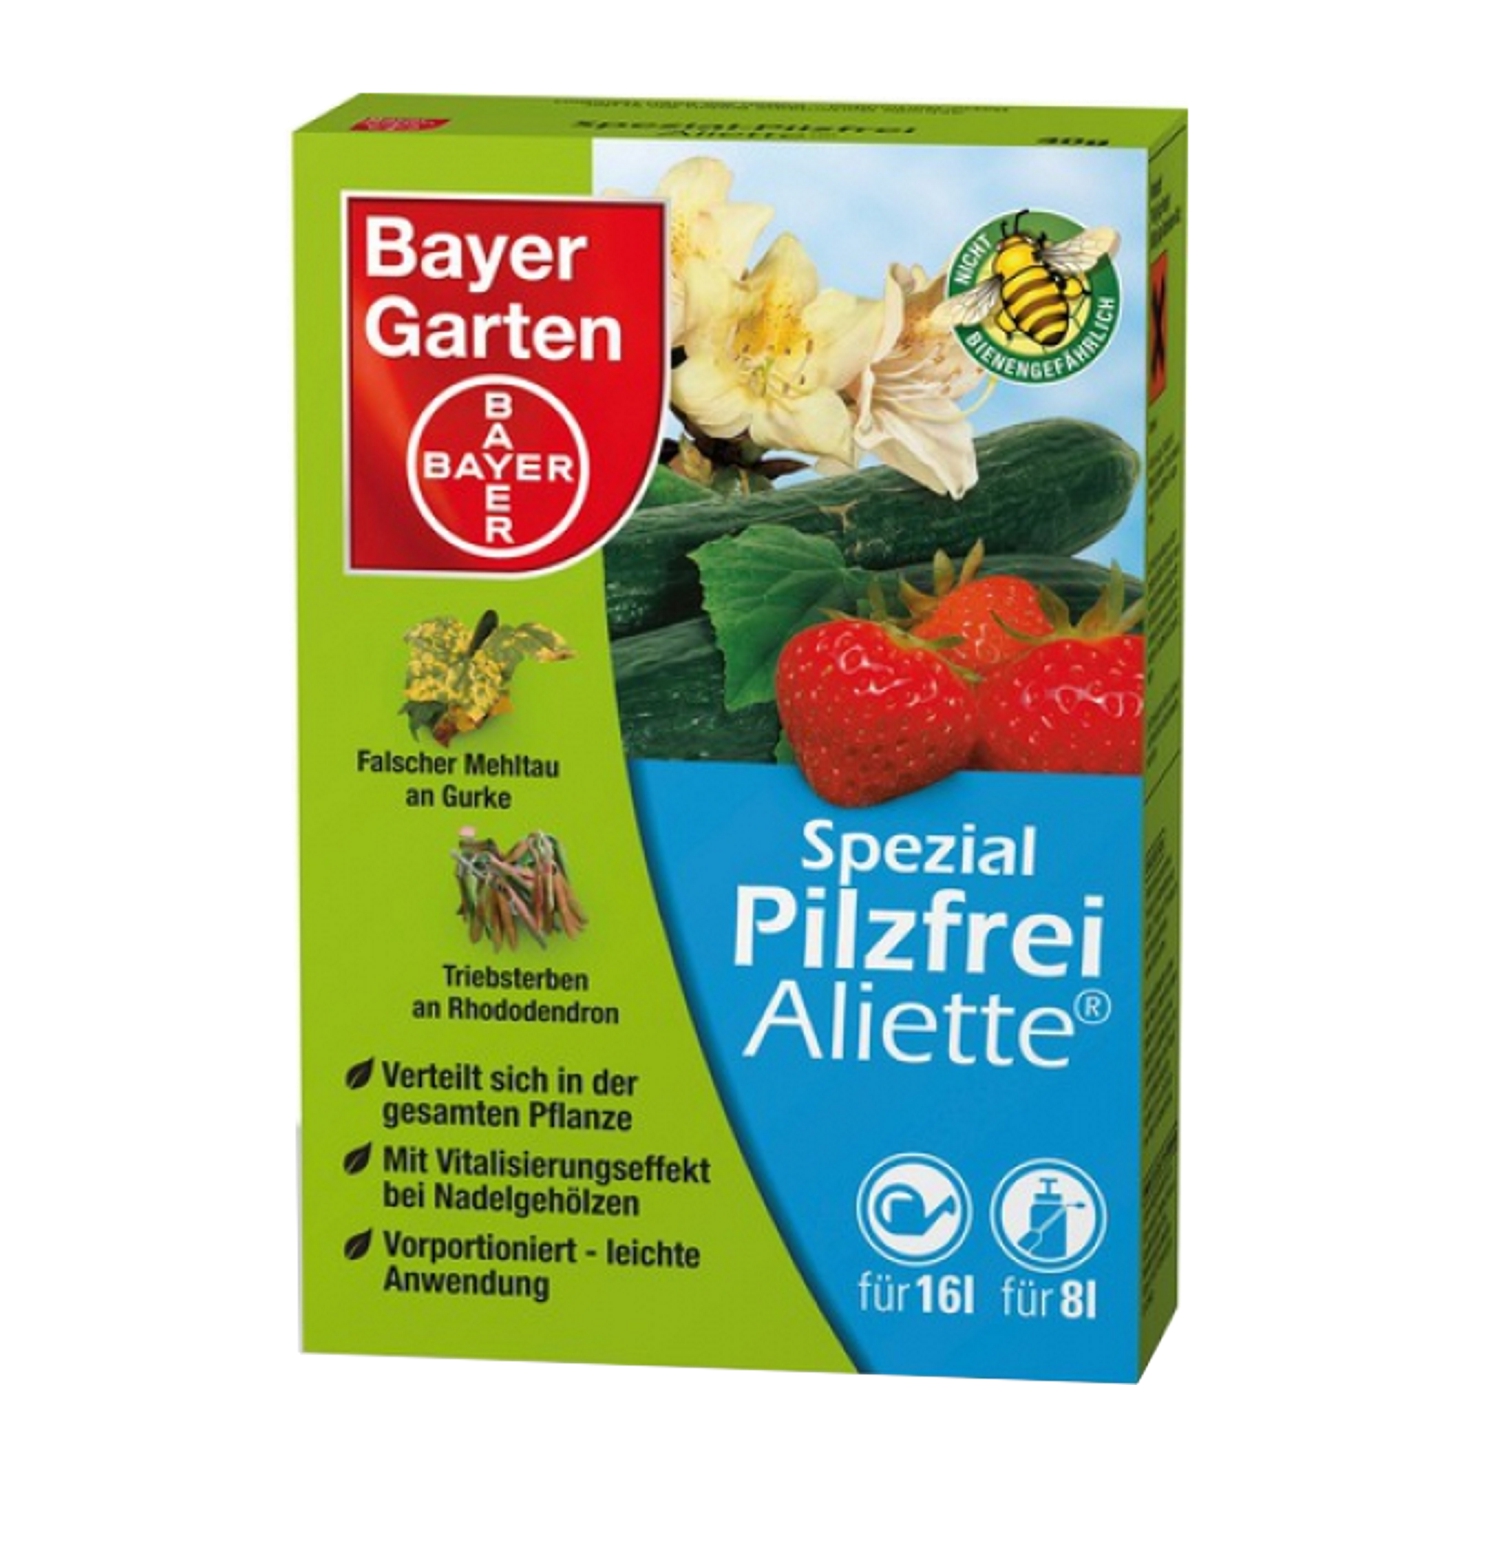 Bayer Spezial-Pilzfr